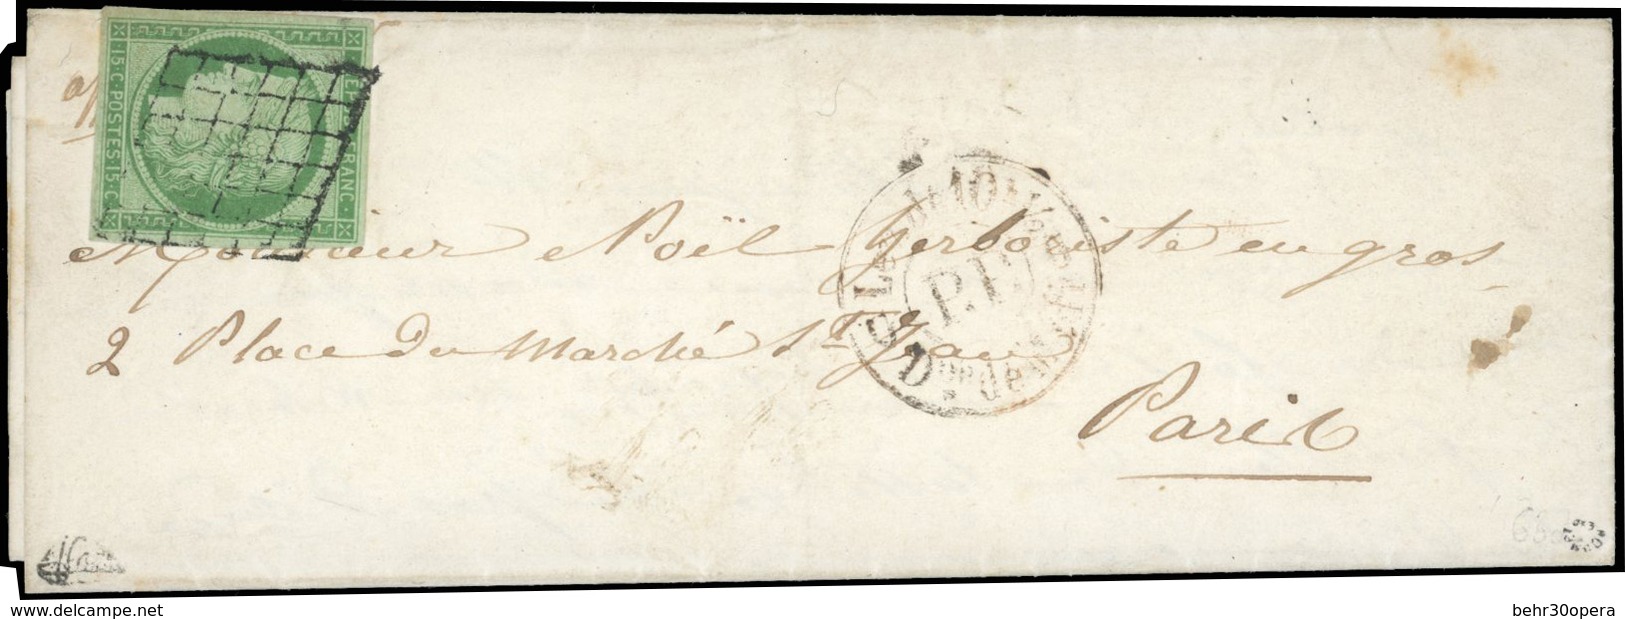 O 15c. Vert Obl. Grille S/lettre Manuscrite Du 21 Août 1850 Frappée Du CàD Rouge ''P.P'' De 1850 à Destination De PARIS. - 1849-1850 Ceres